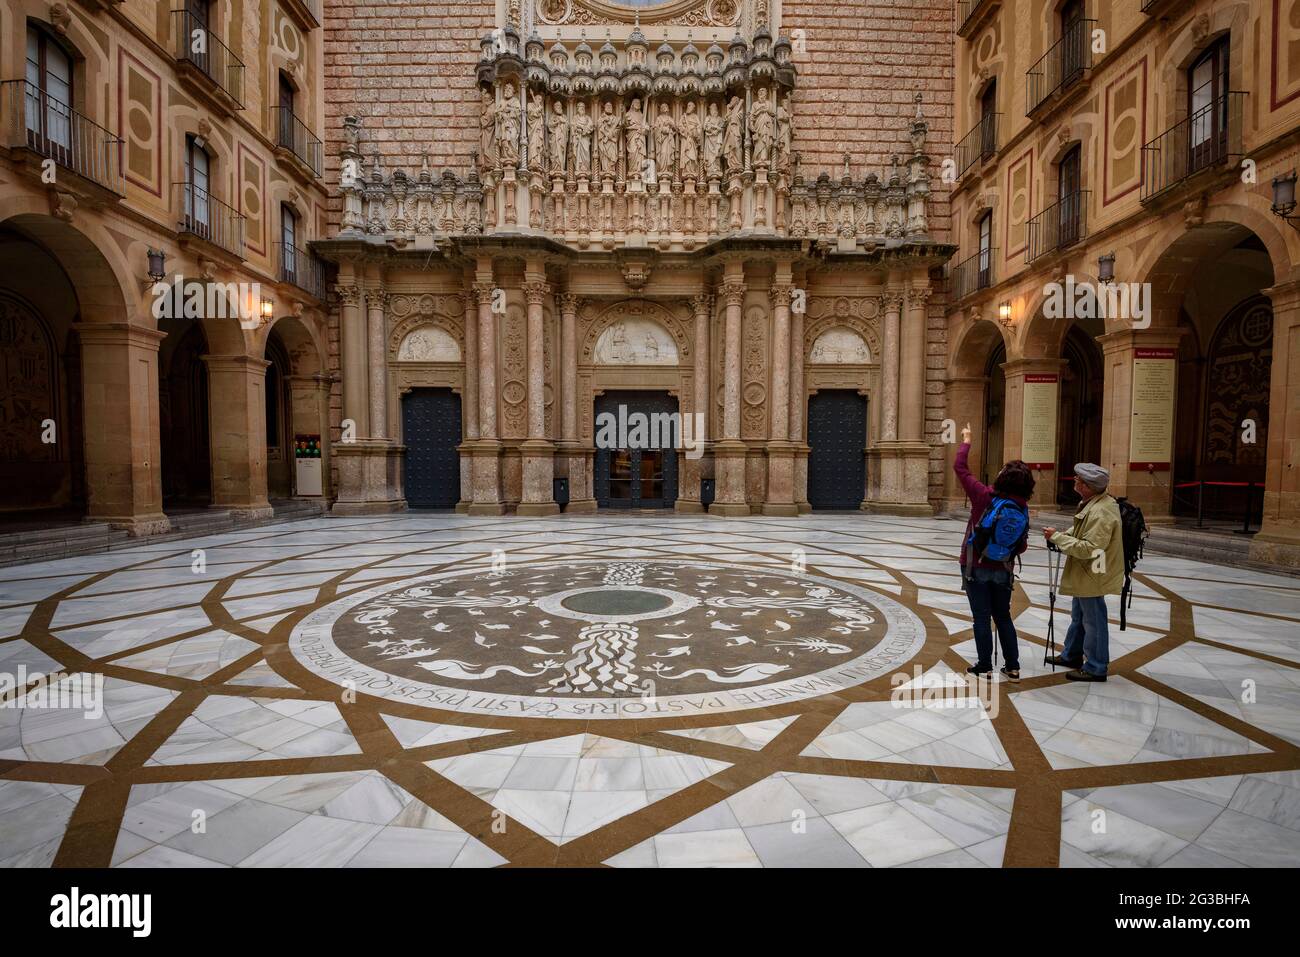 Atrium in front of the basilica's facade of the Montserrat Abbey (Barcelona, Catalonia, Spain) ESP: Atrio delante de la fachada de Montserrat, España Stock Photo